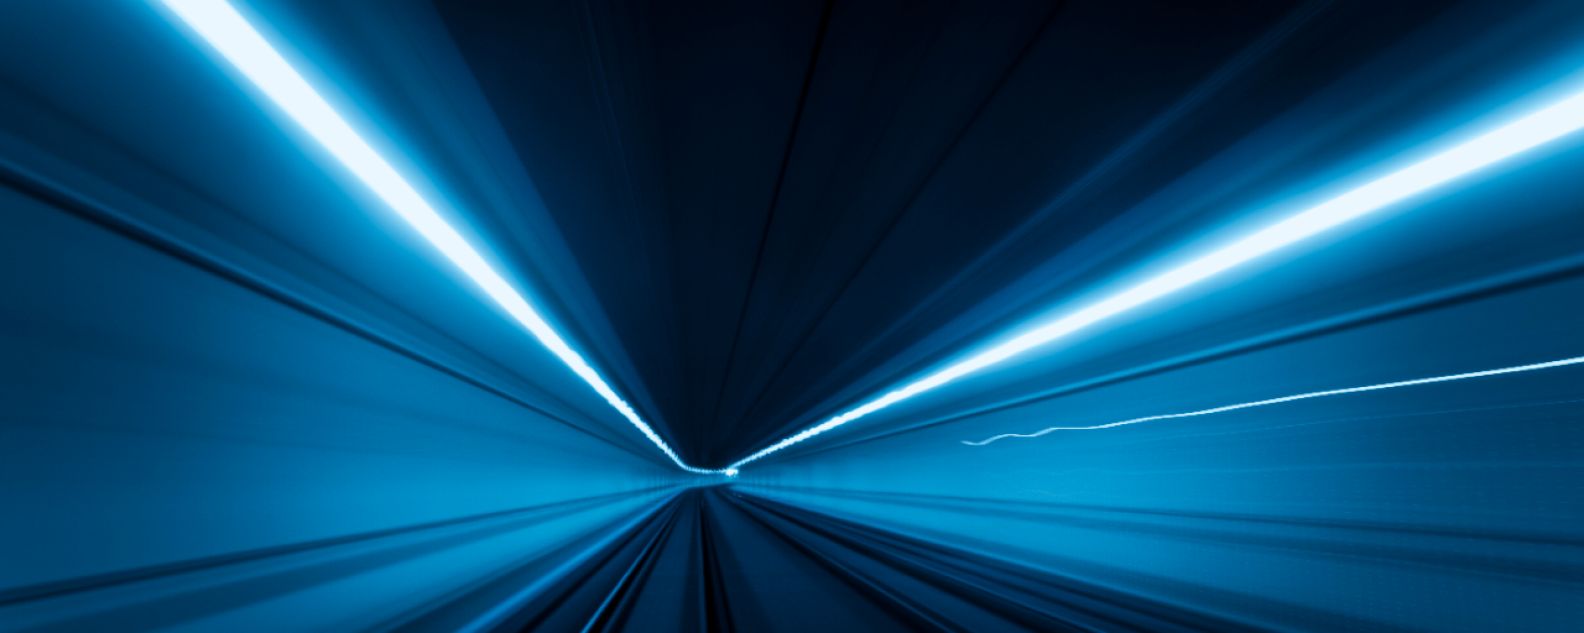 トンネル内のライトの軌跡を高速撮影した画像